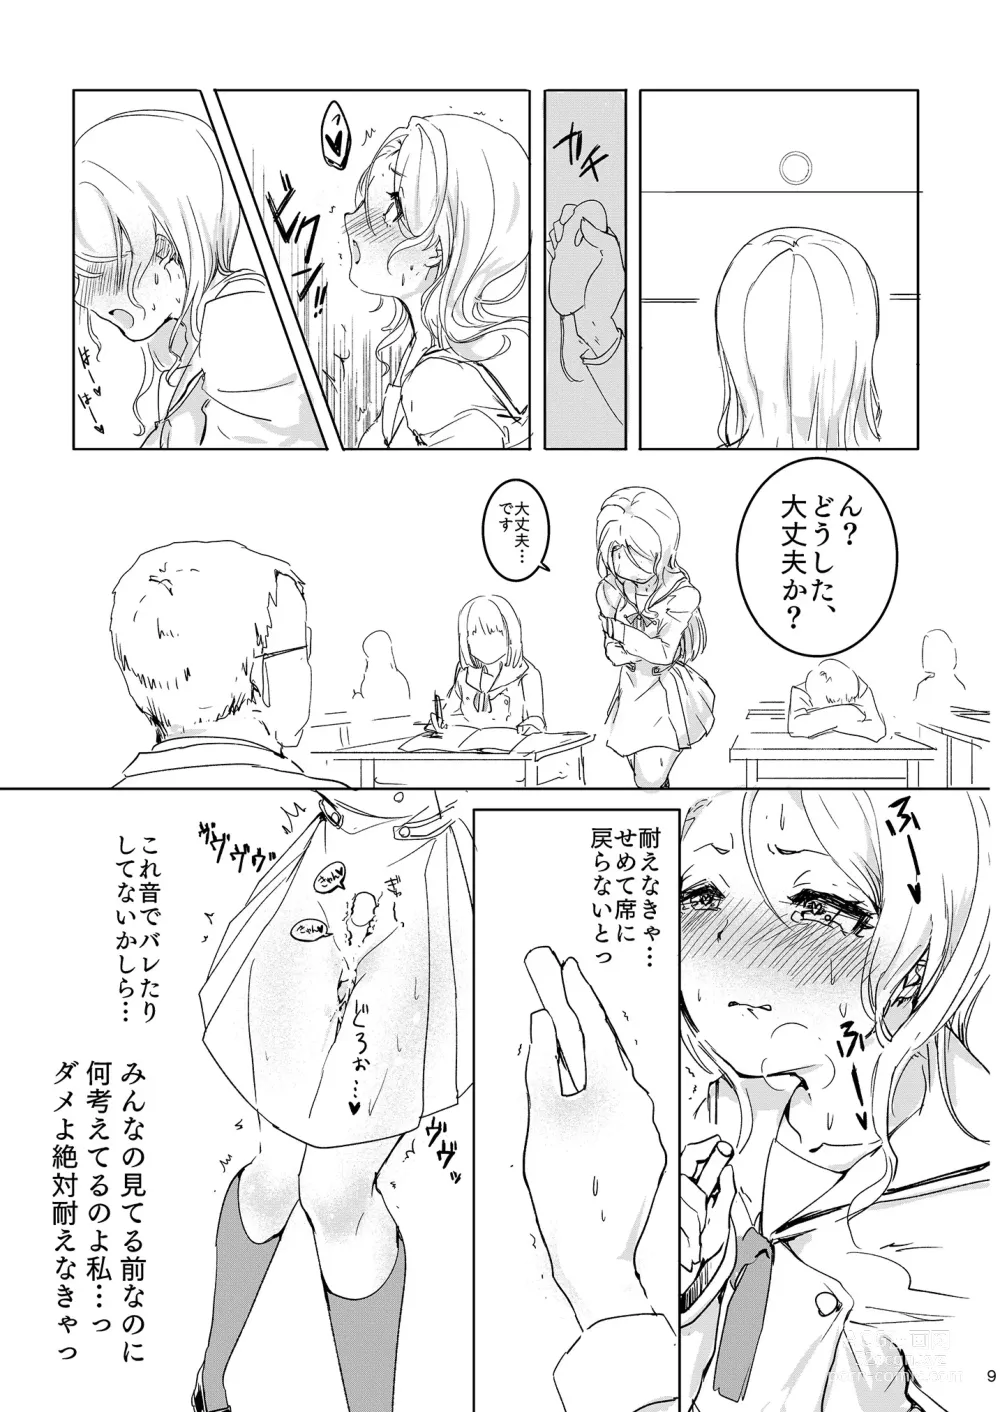 Page 9 of doujinshi Onee-chan ni Nigon wa Nai yo ne!